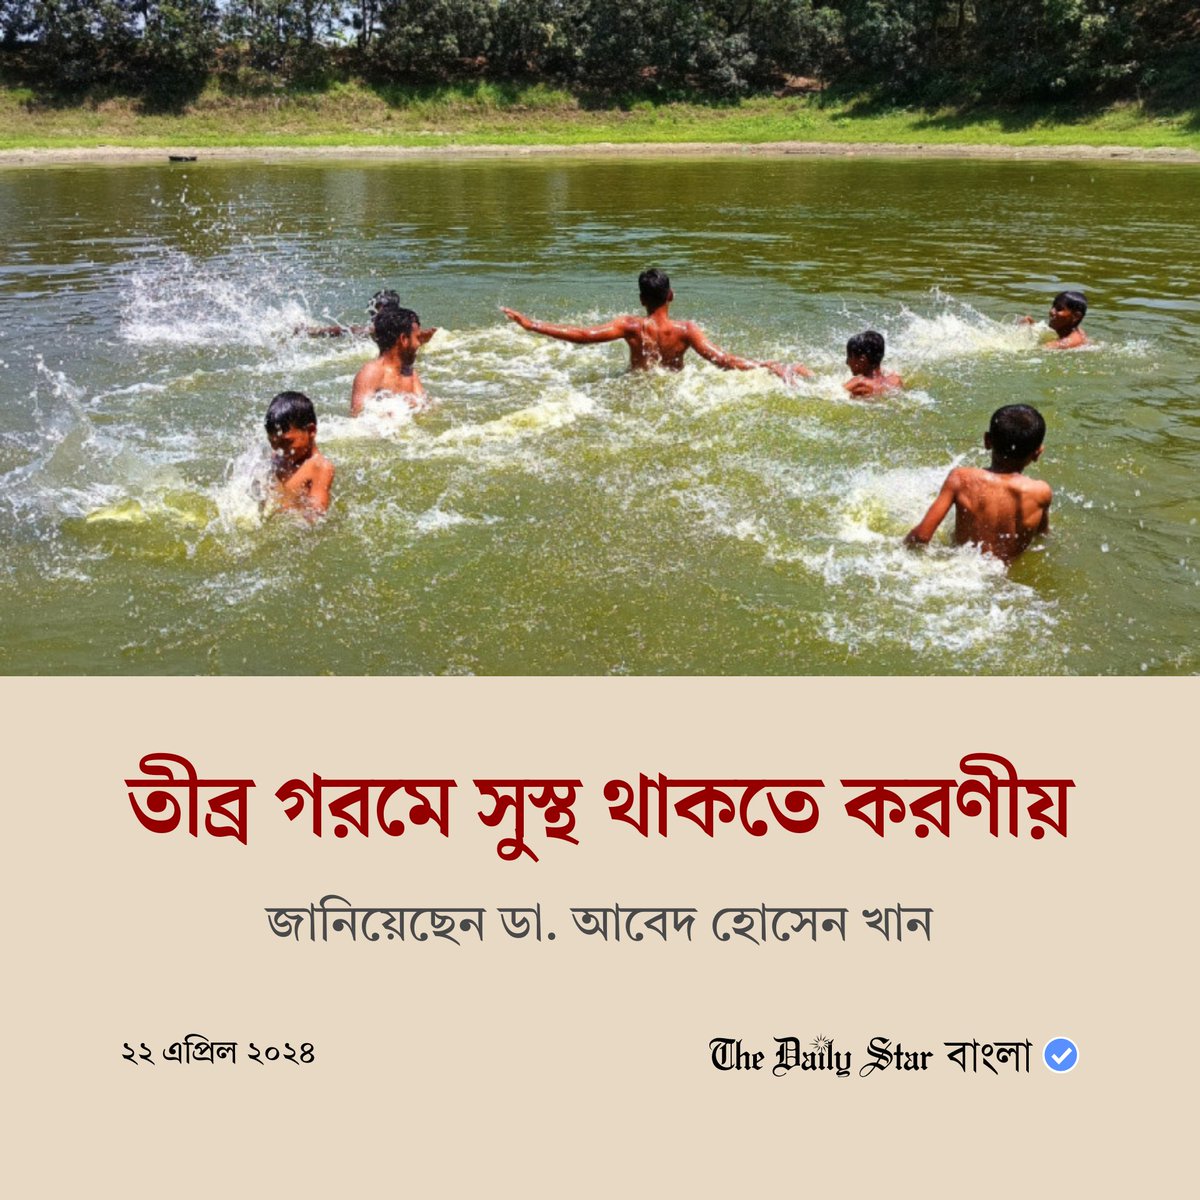 বিস্তারিতঃ bangla.thedailystar.net/life-living/we…

#bangladesh #weather #environment #heatwave #whattodo #banglanews